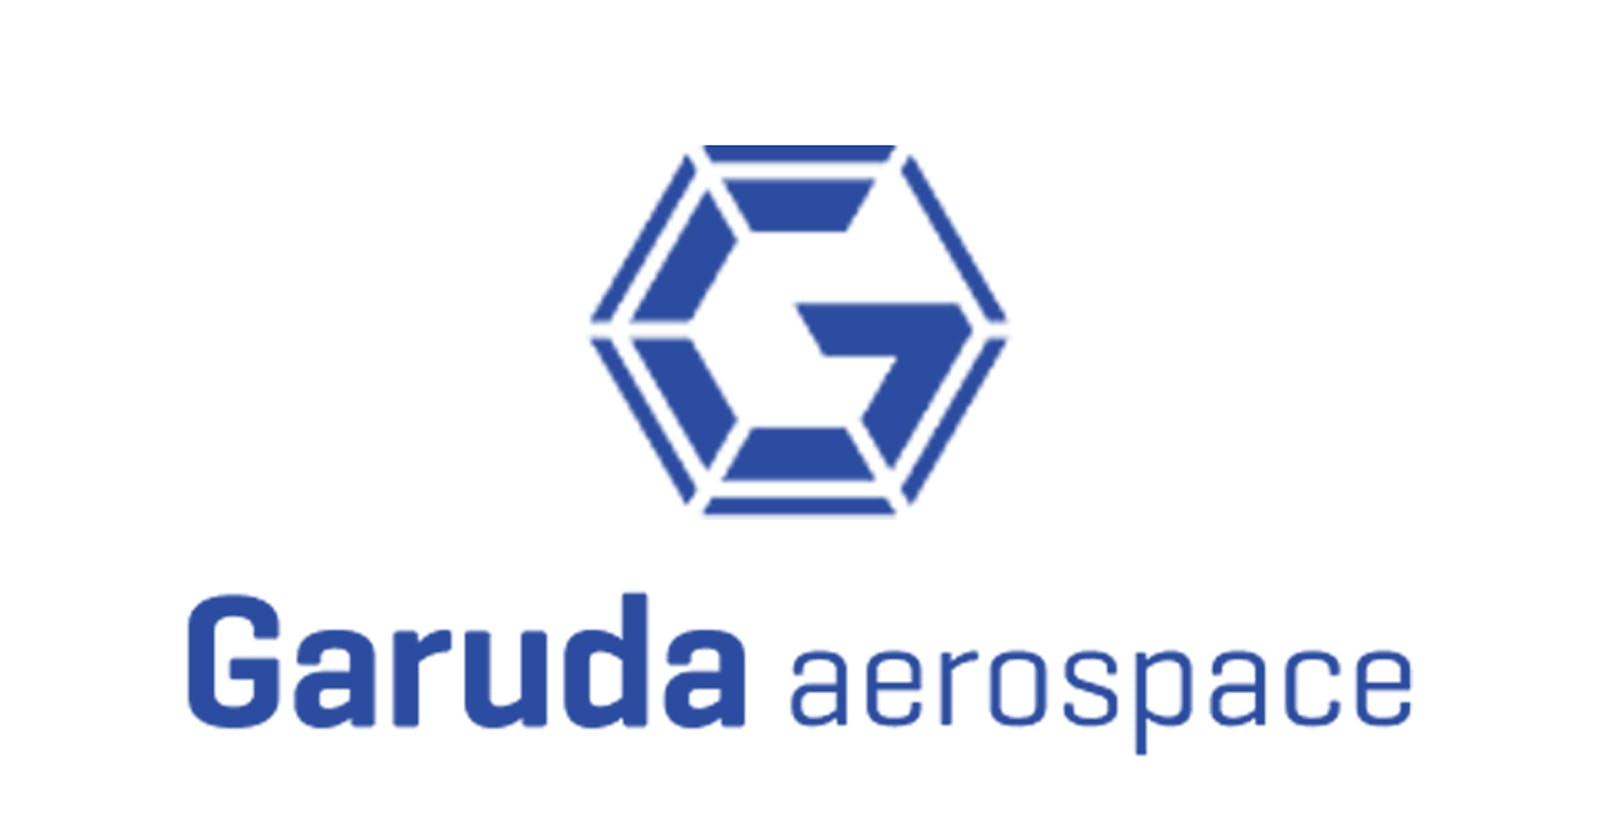 ட்ரோன் ஸ்டார்ட்அப் கருடா ஏரோஸ்பேஸில் (Garuda Aerospace) முதலீடு செய்த எம்எஸ் தோனி